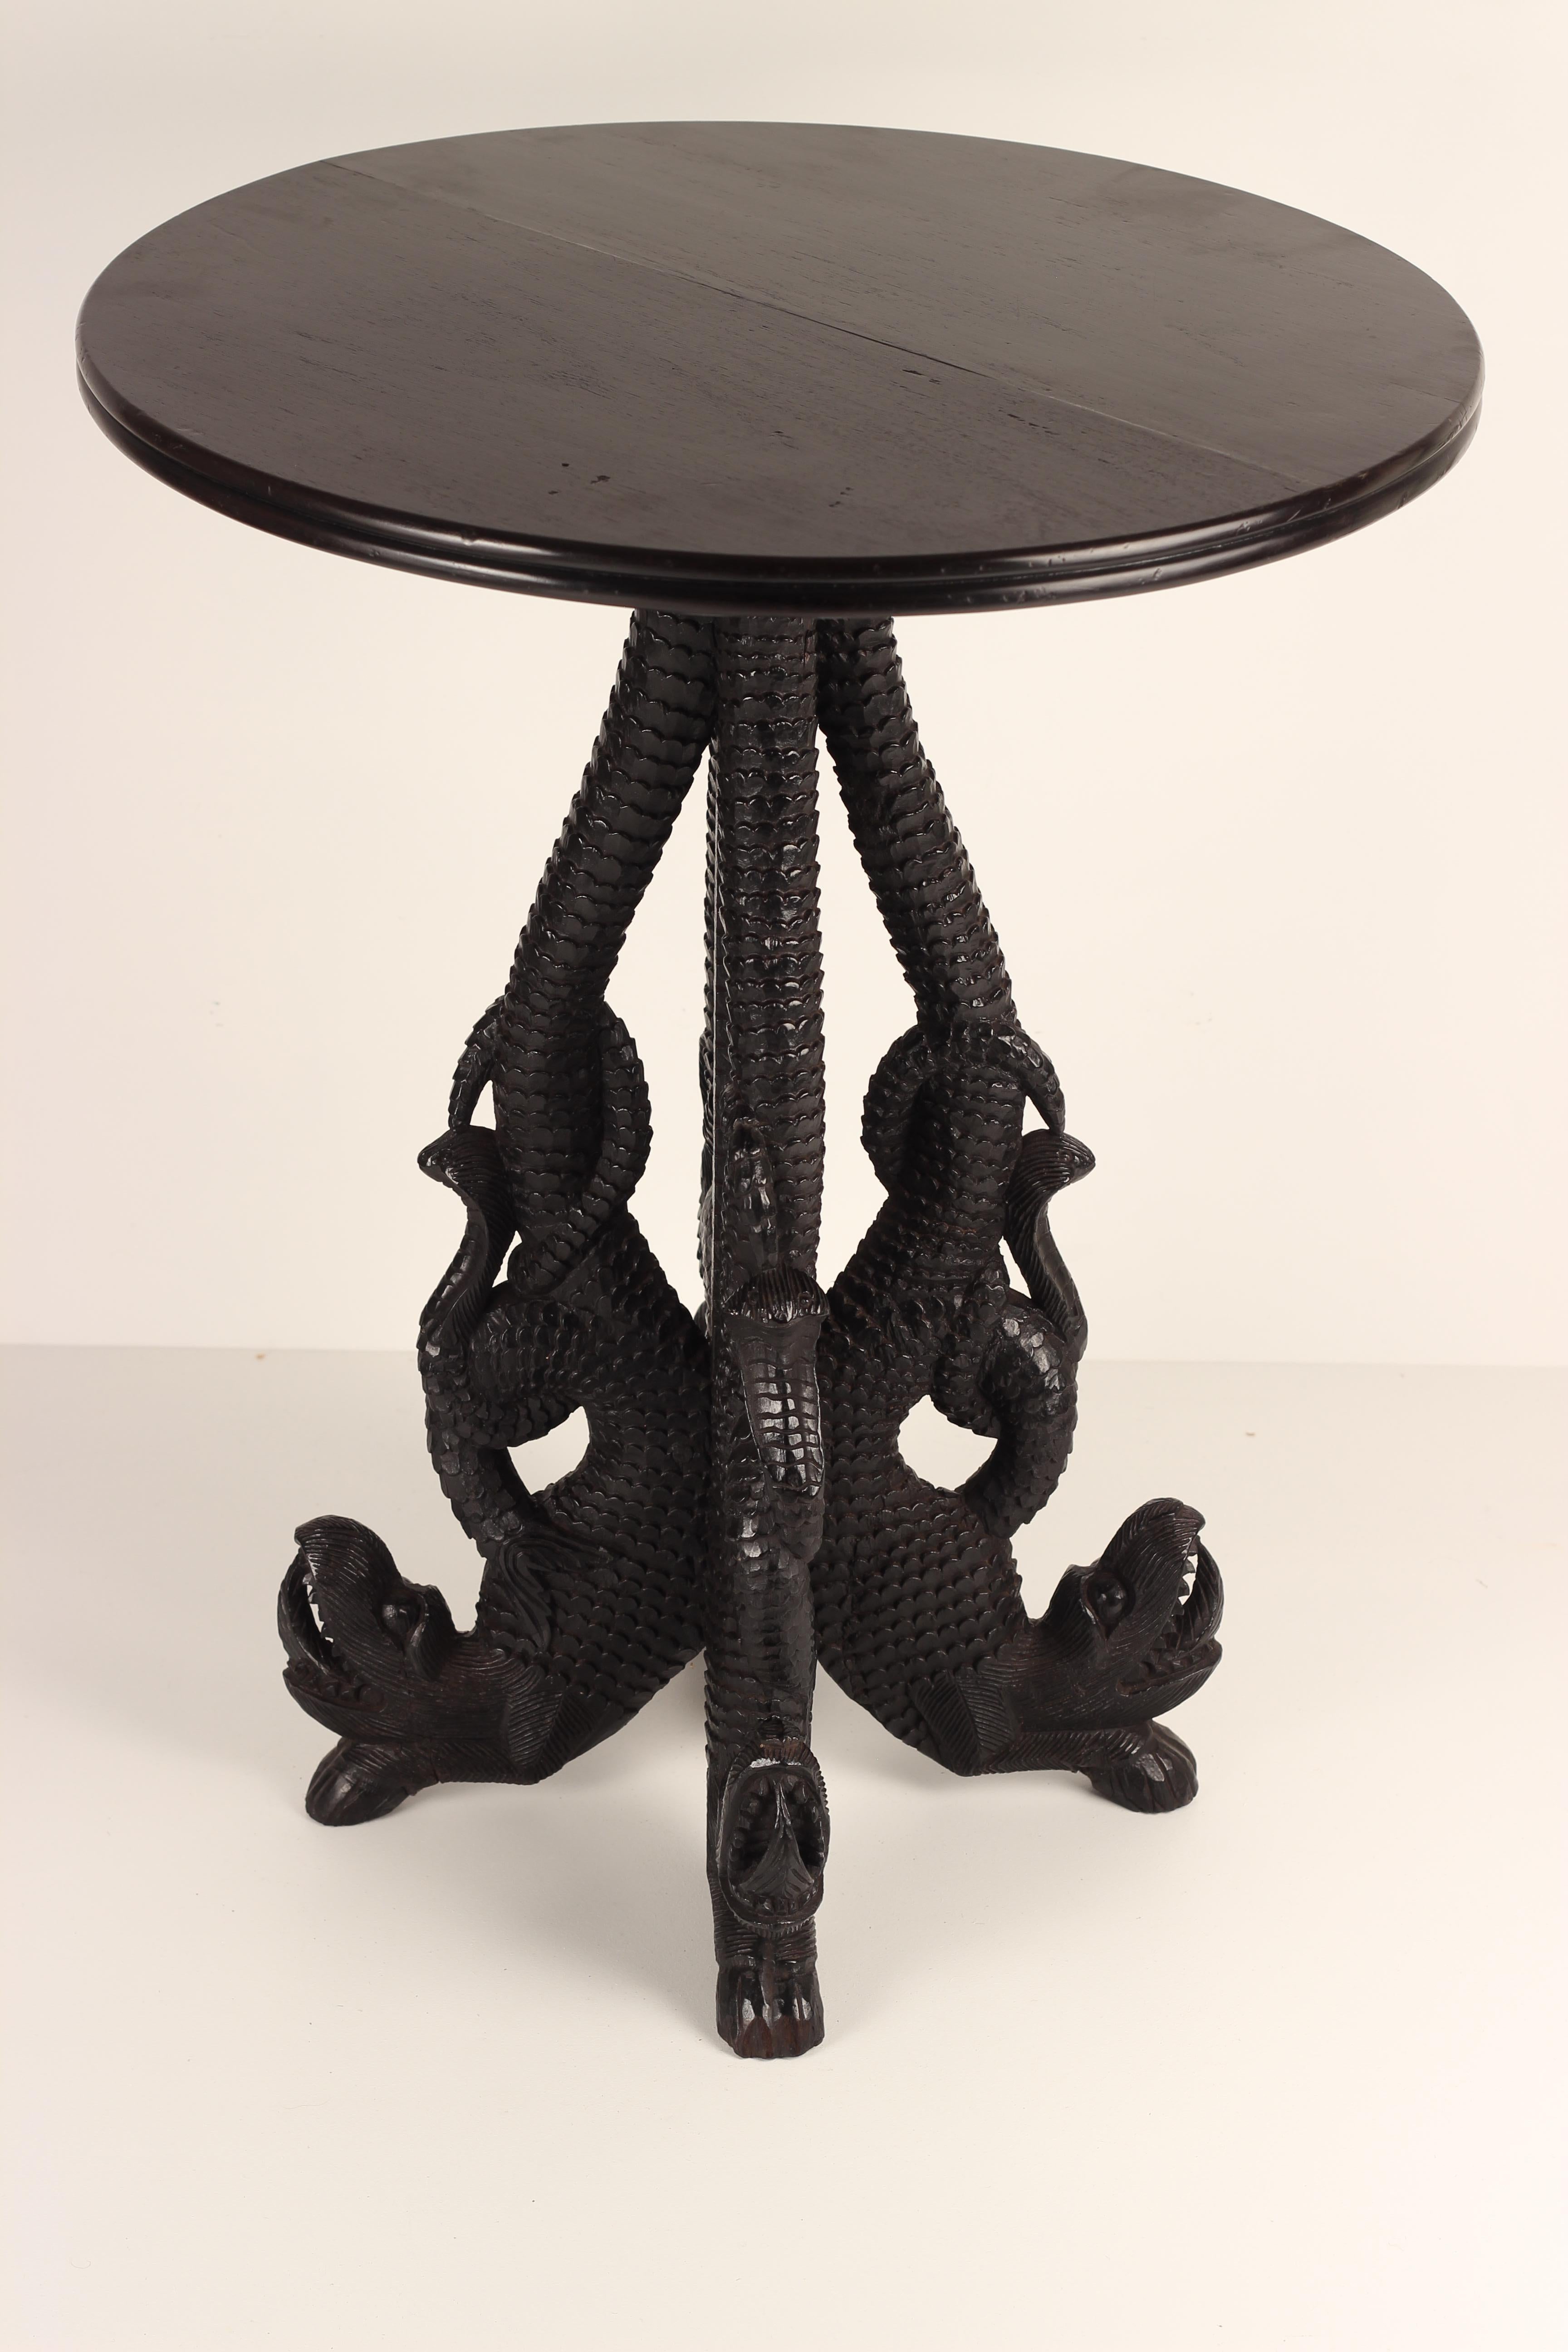 Table en palissandre anglo-indien du XIXe siècle, richement sculptée et détaillée. Quatre dragons forment la tige et les pieds de la table. Nous pensons que le plateau est une édition ultérieure et nous pensons qu'un plateau en marbre sur mesure